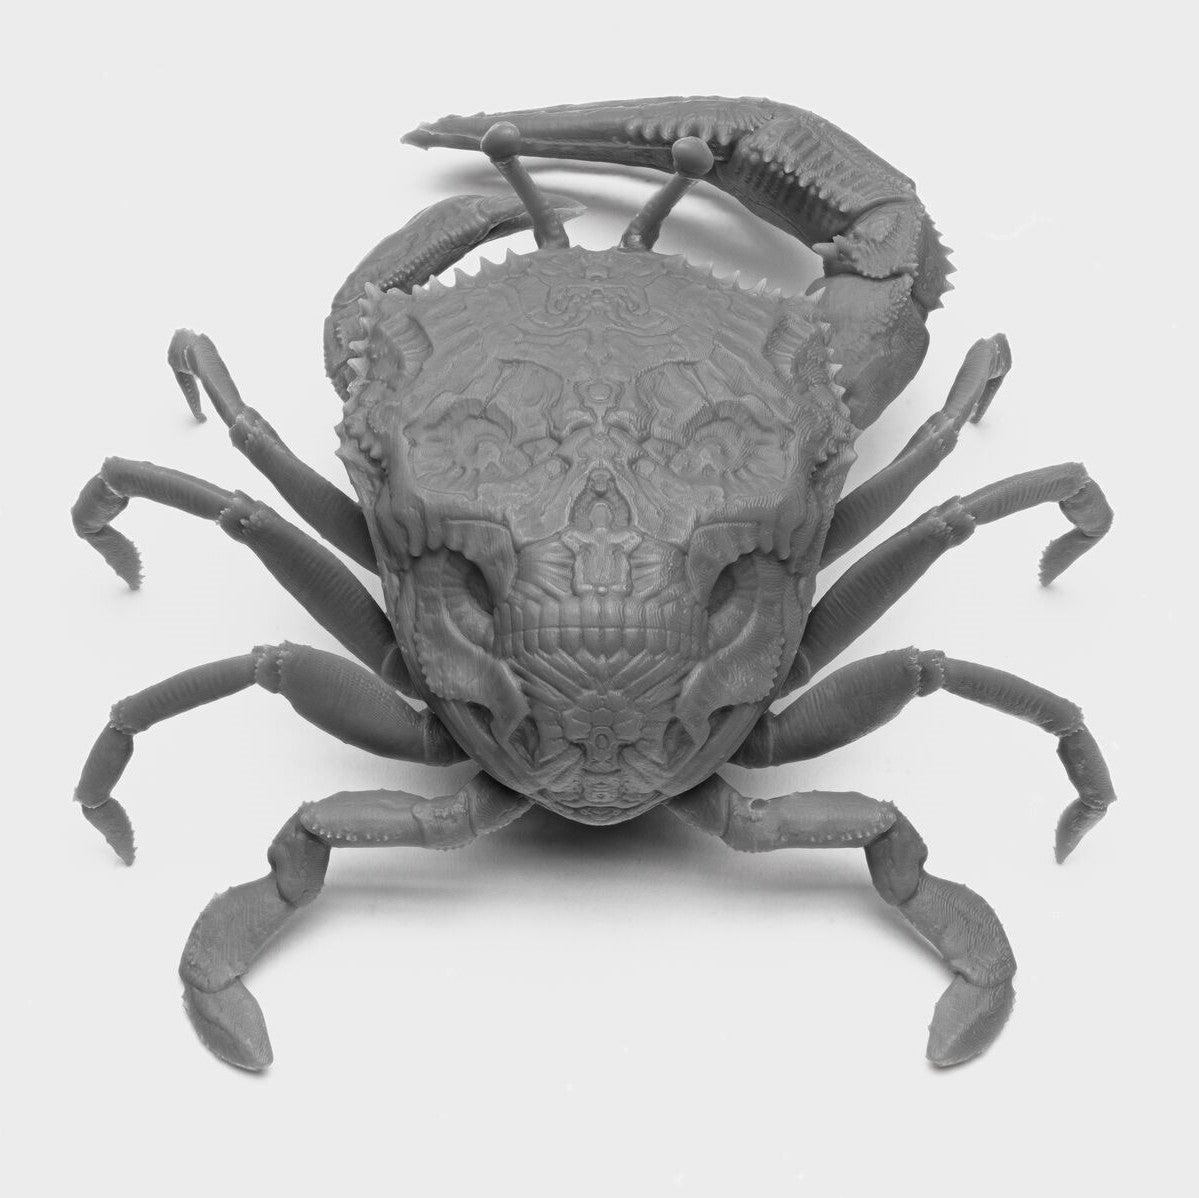 3d printed crab